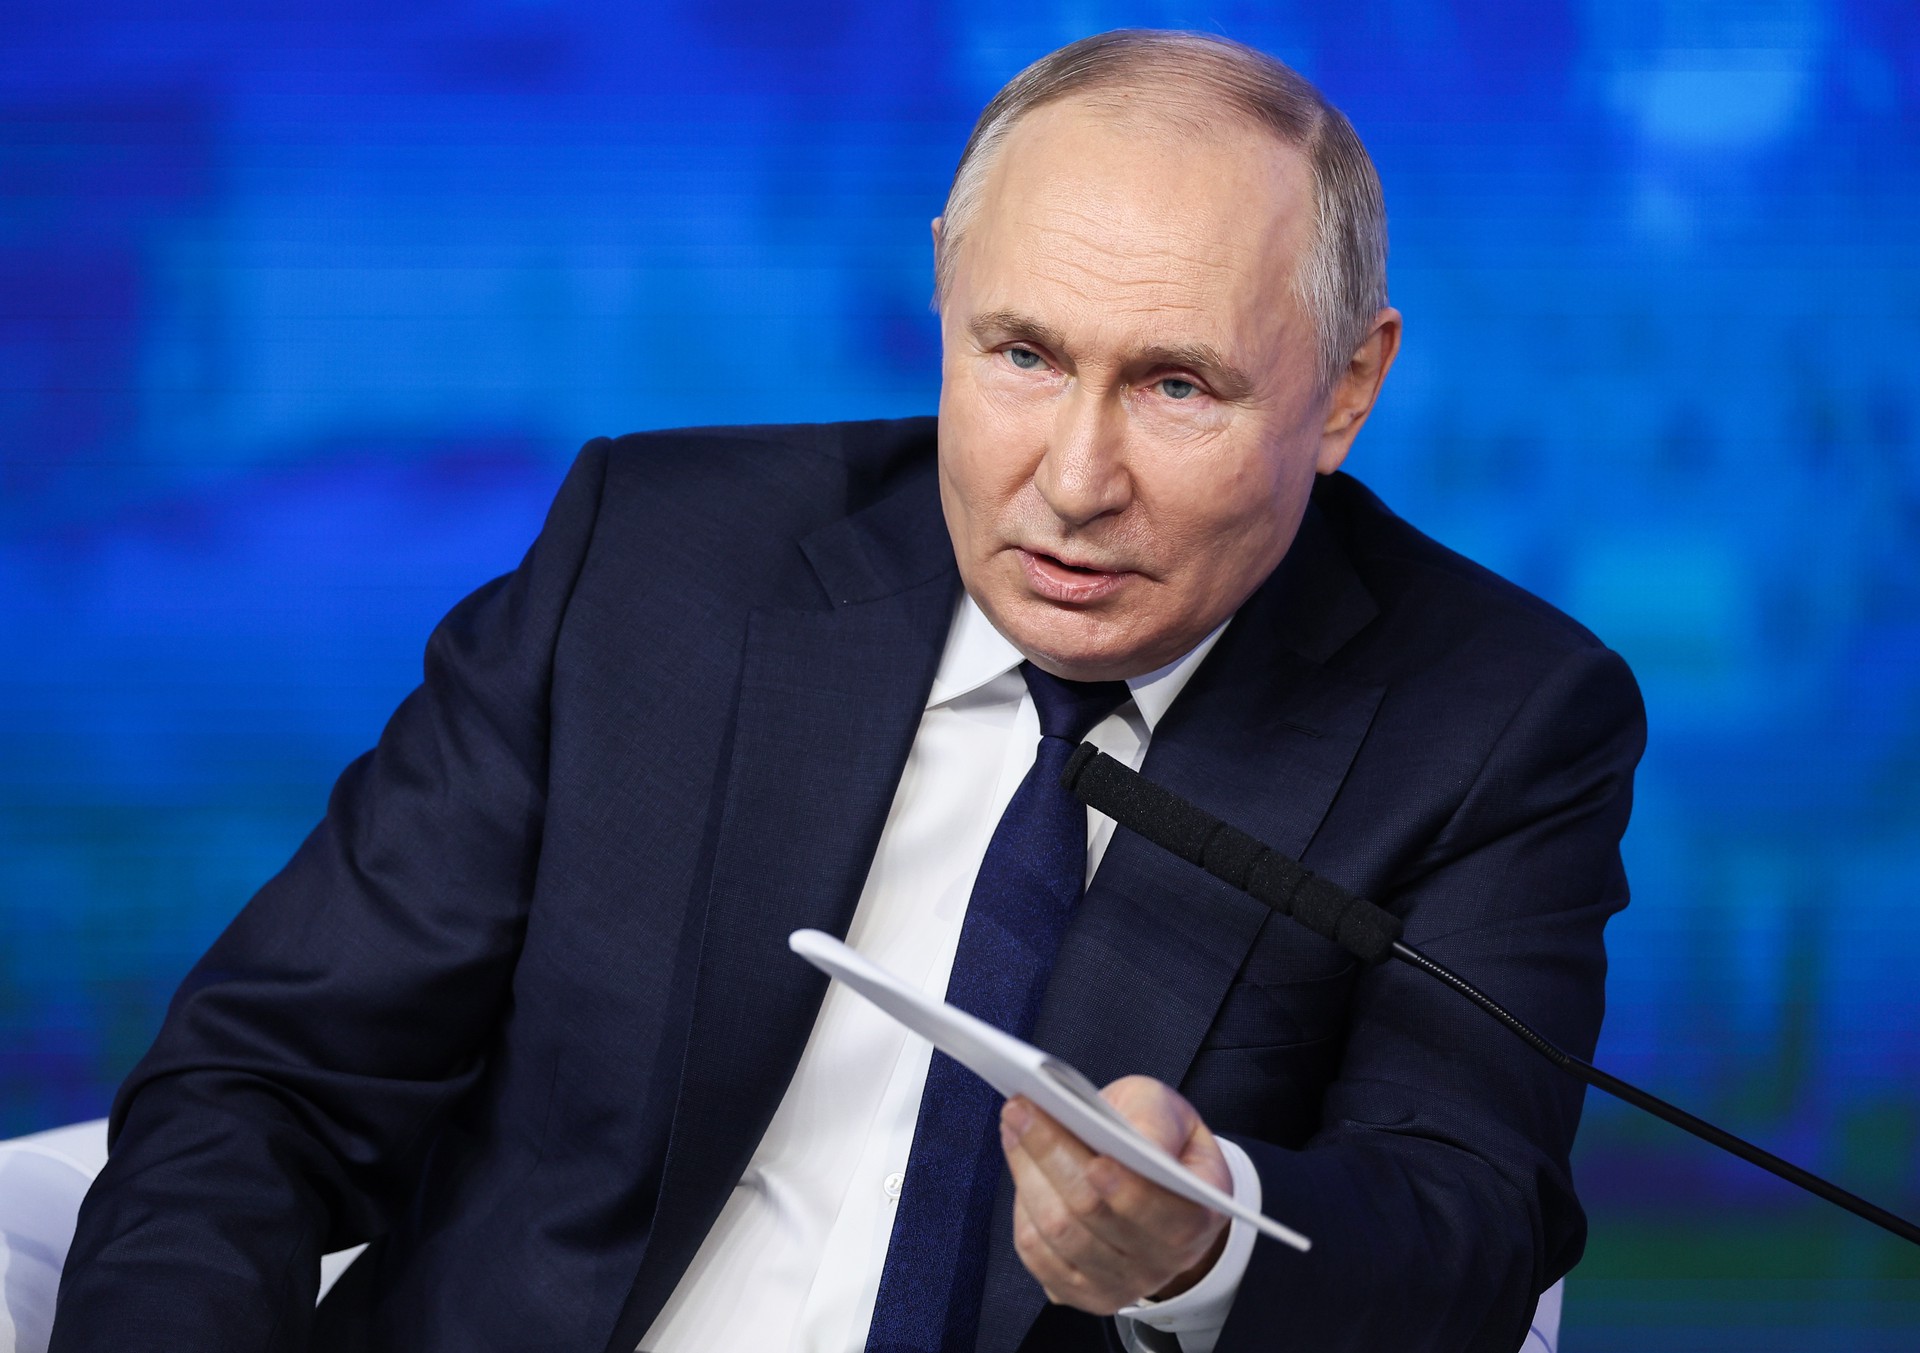 ERR: Провал контрнаступления ВСУ дал толчок росту доверия к Путину и России